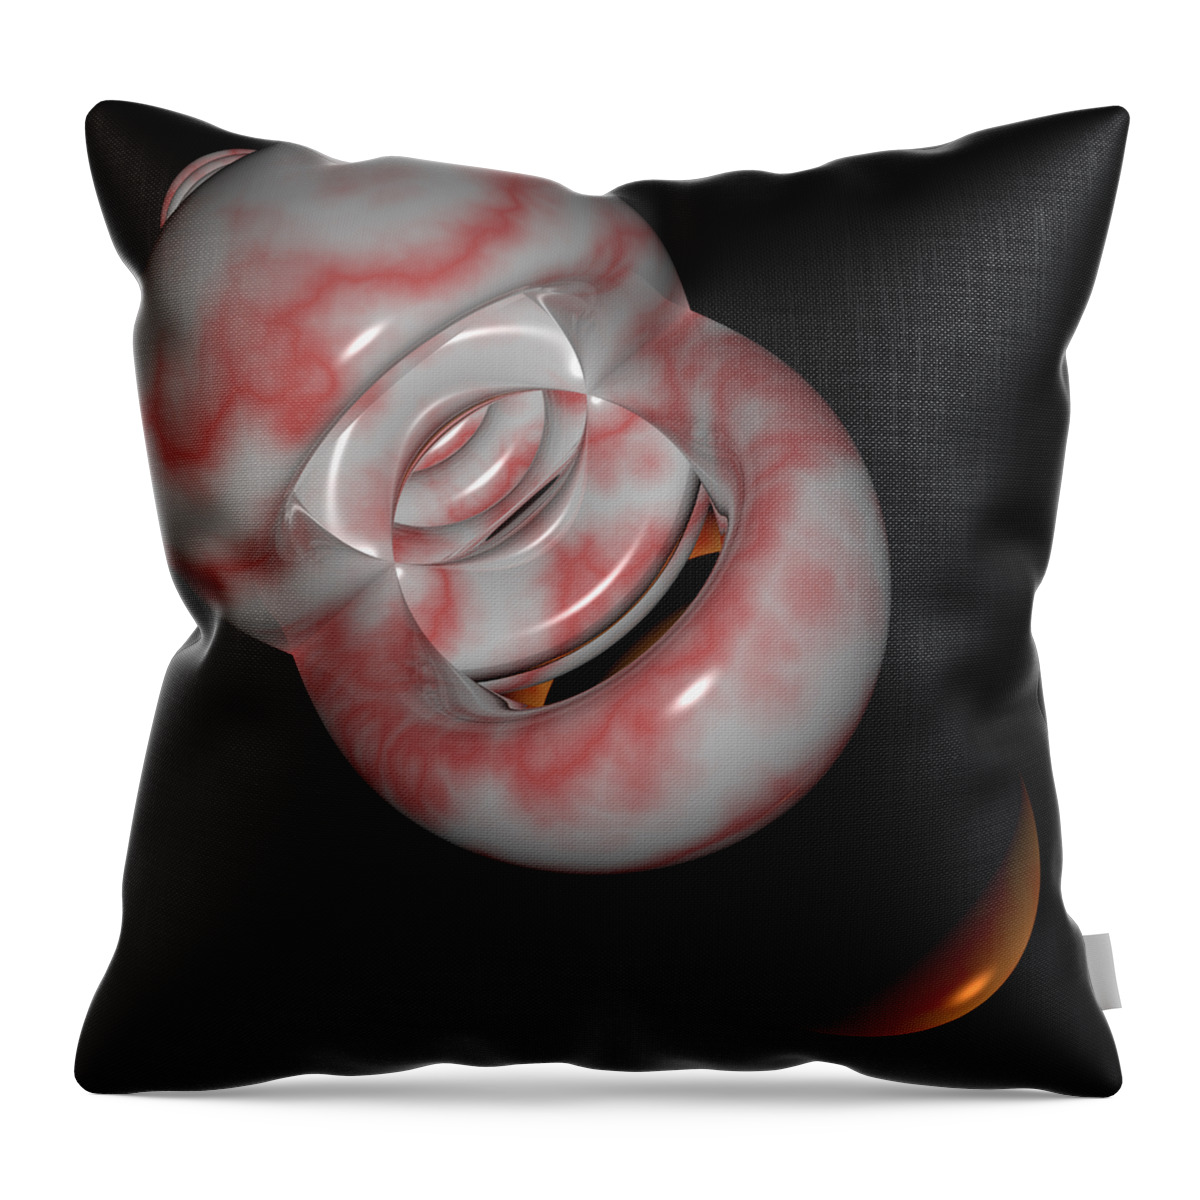 Mouth Throw Pillow featuring the digital art R 004 D by Rolf Bertram